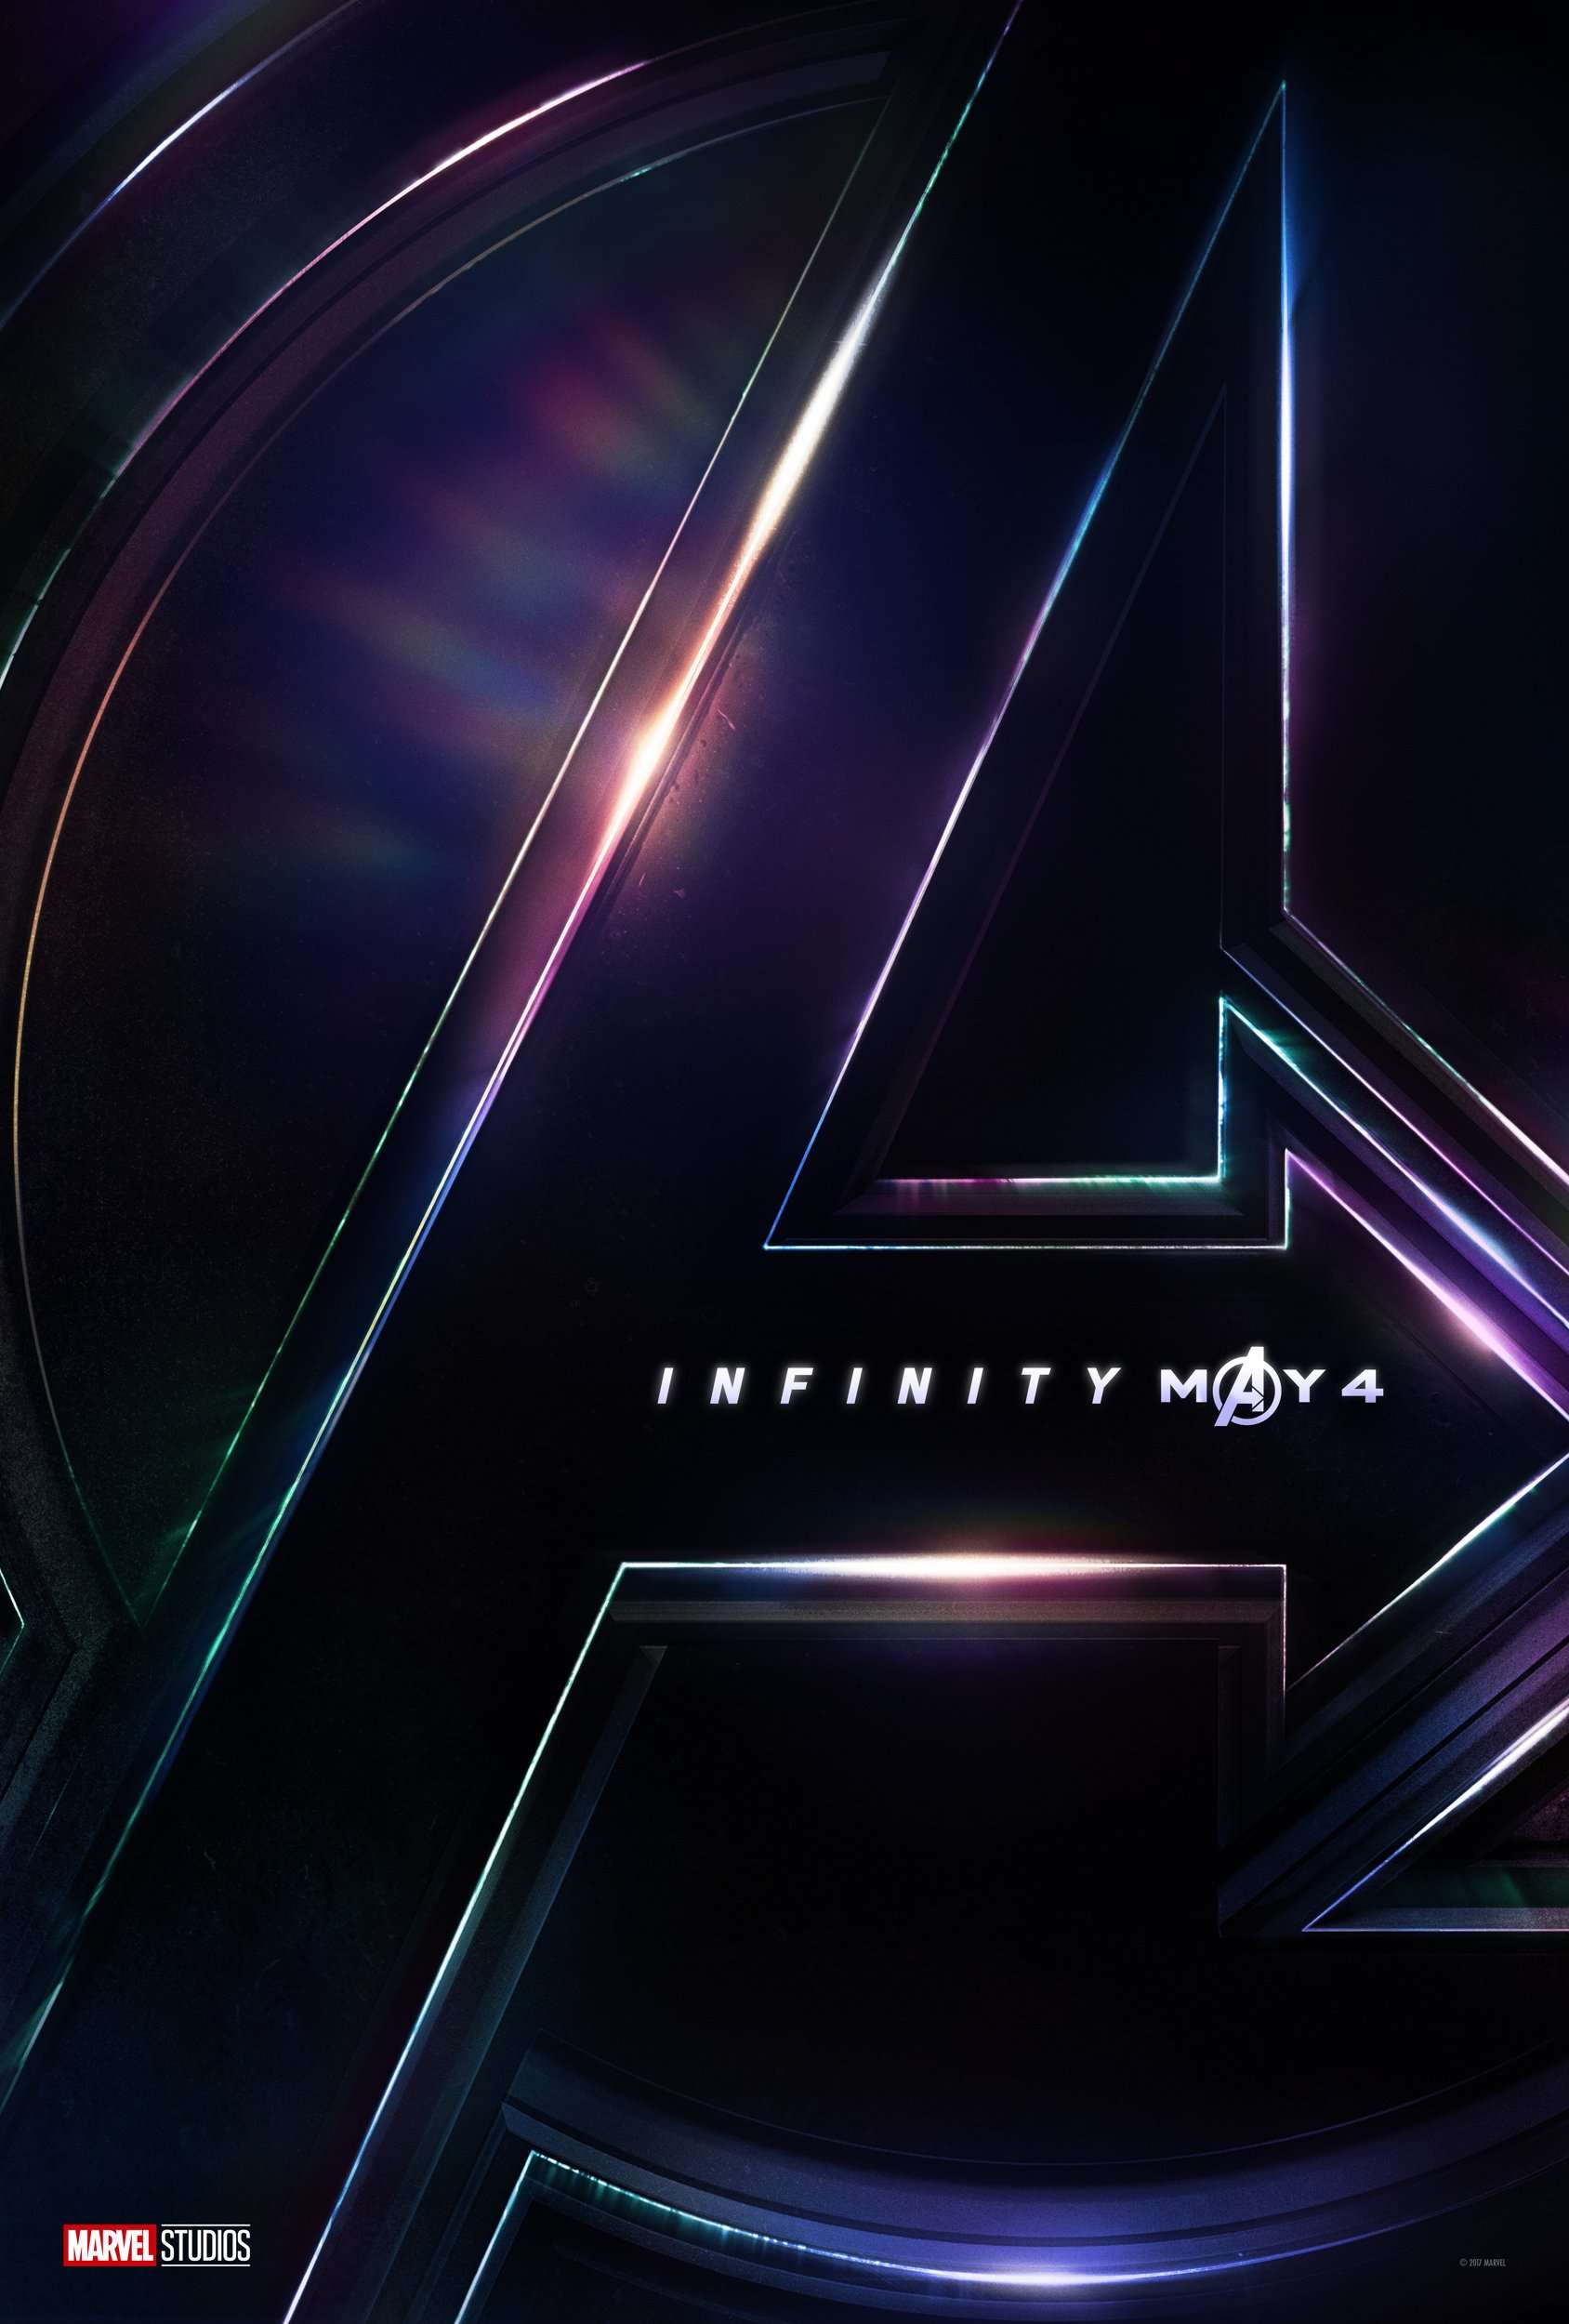 image for 'Avengers: Infinity War' Runtime - 2hr 36min